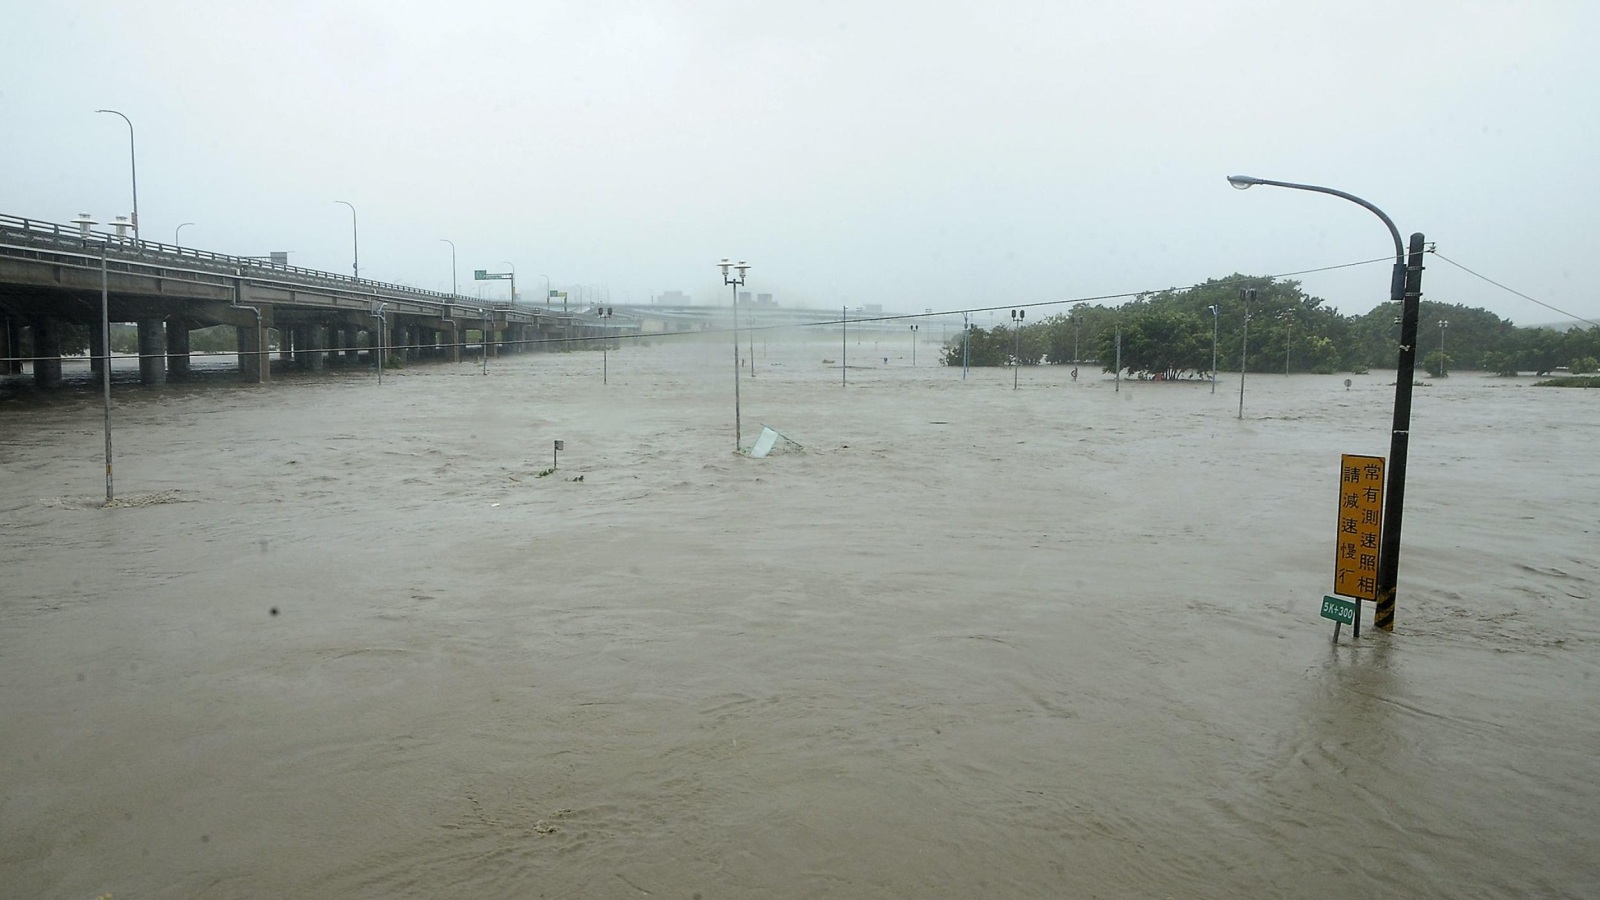 المياه الناتجة عن الإعصار تغرق أحد المتنزهات بالعاصمة التايوانية (رويترز)